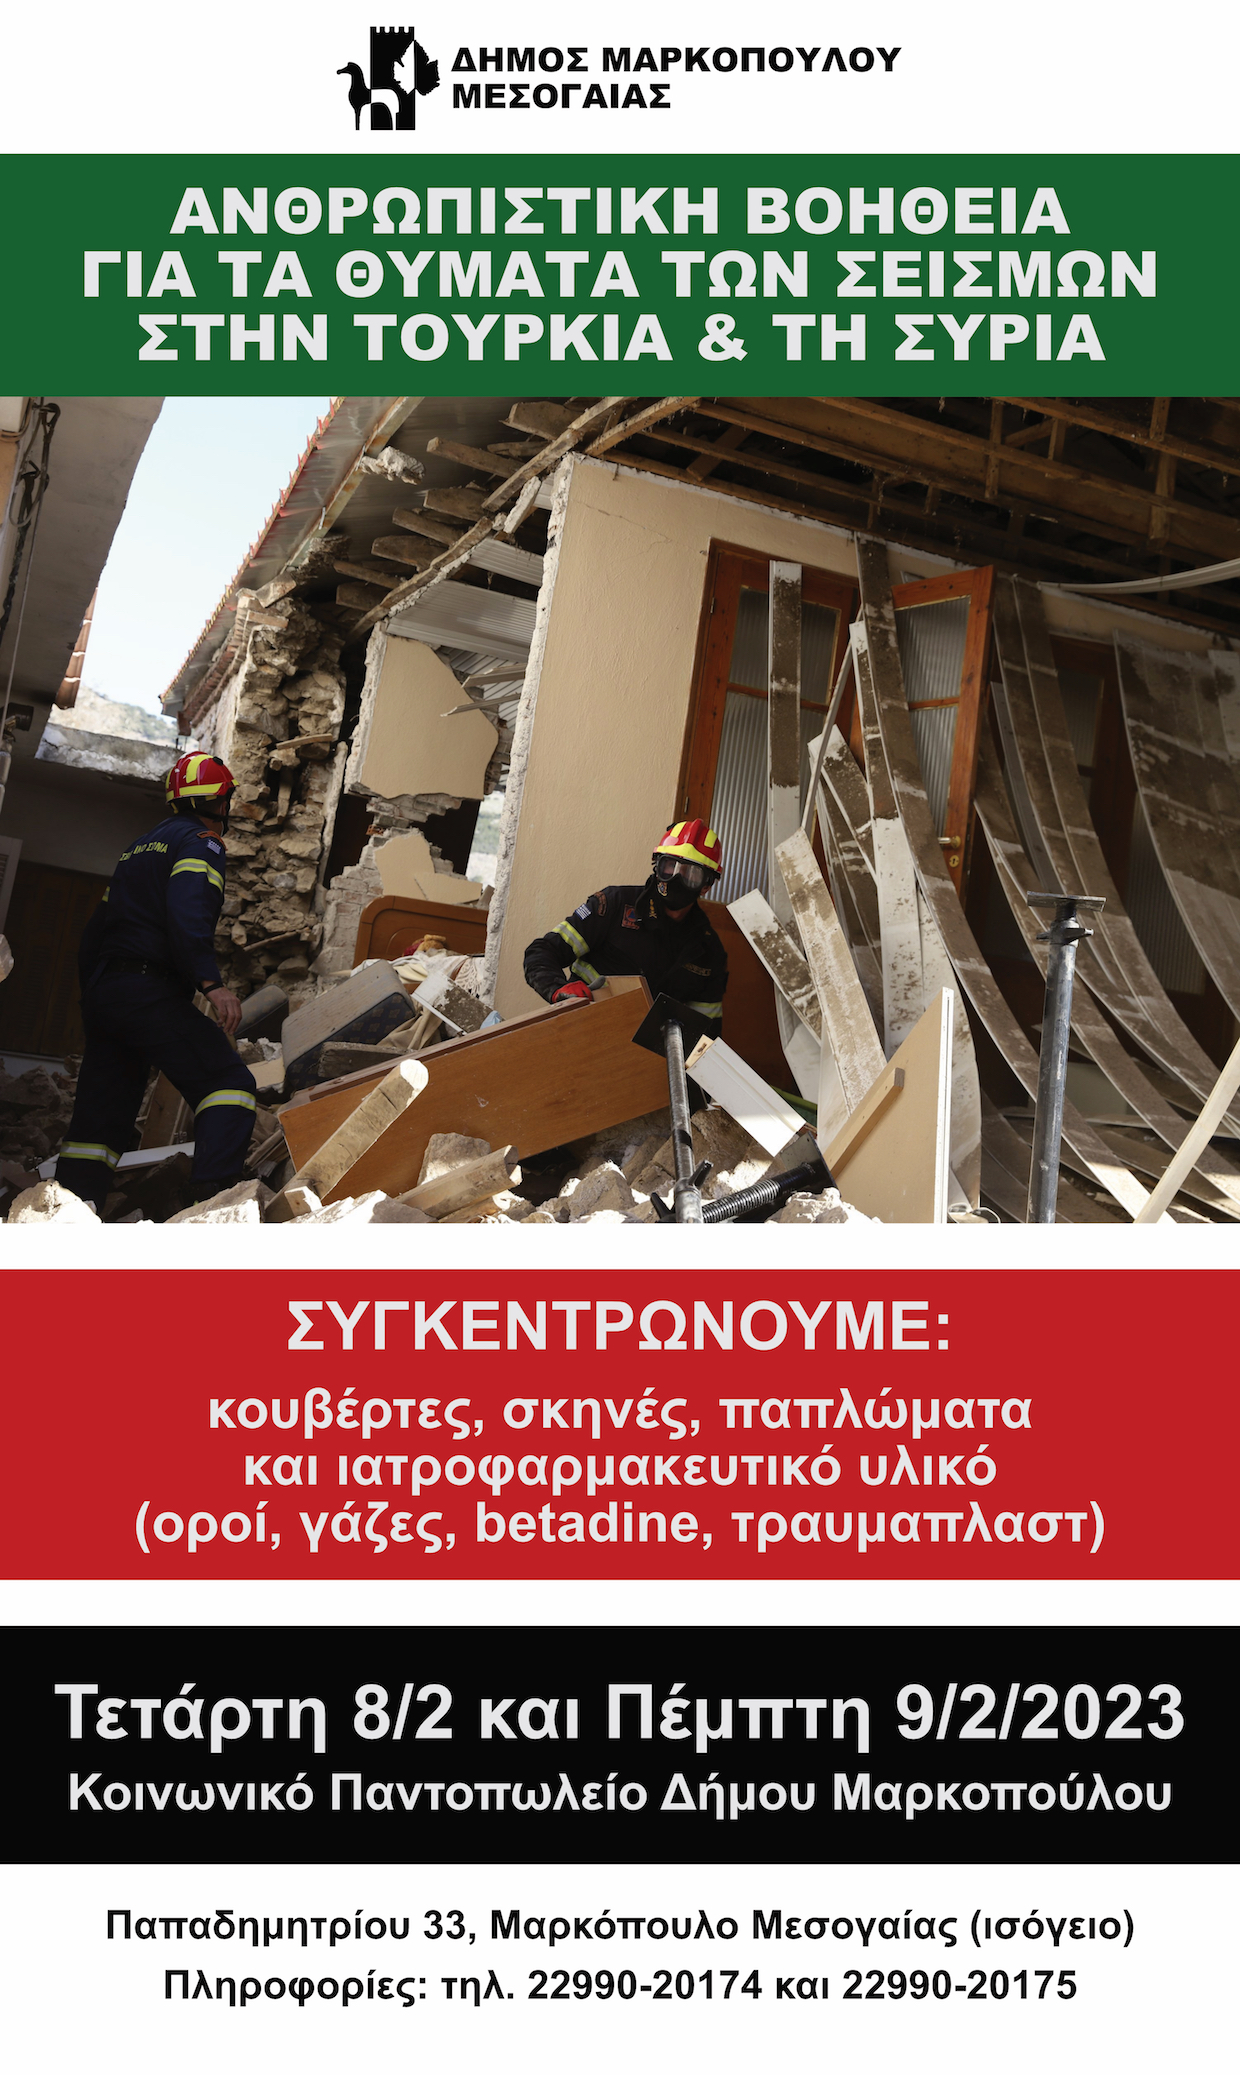 Ο Δήμος Μαρκοπούλου συγκεντρώνει ανθρωπιστική βοήθεια για τα θύματα των σεισμών σε Τουρκία και Συρία